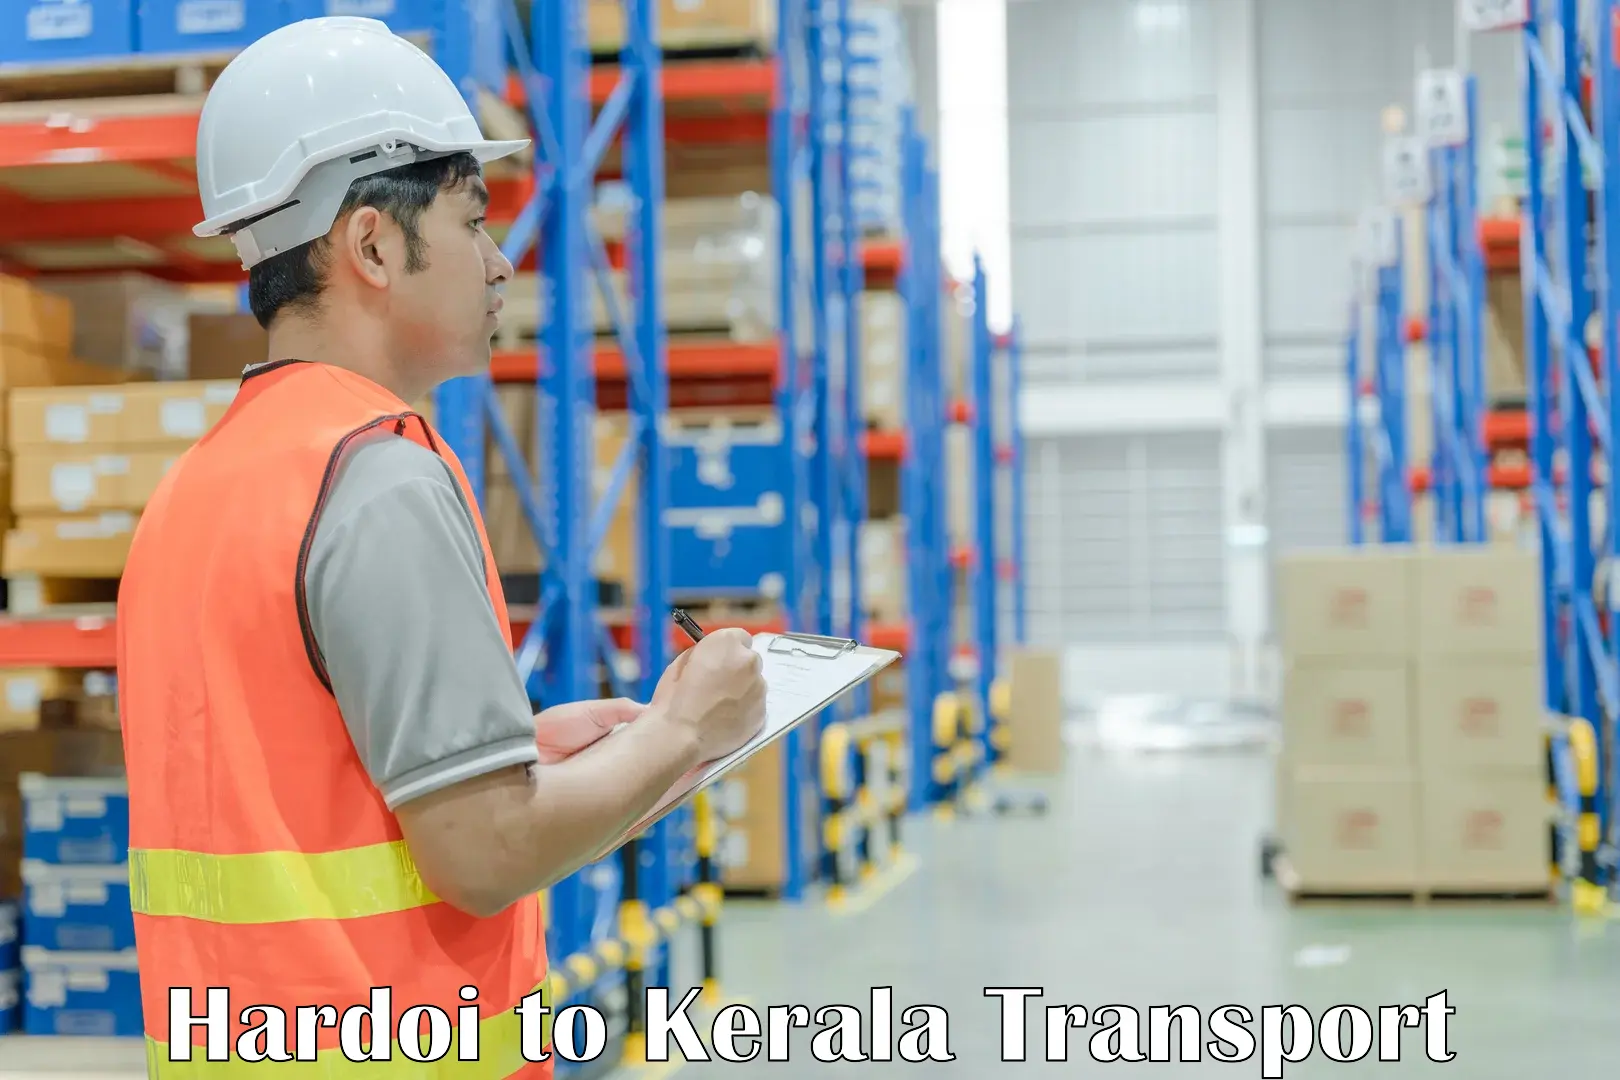 Truck transport companies in India Hardoi to Mundakayam